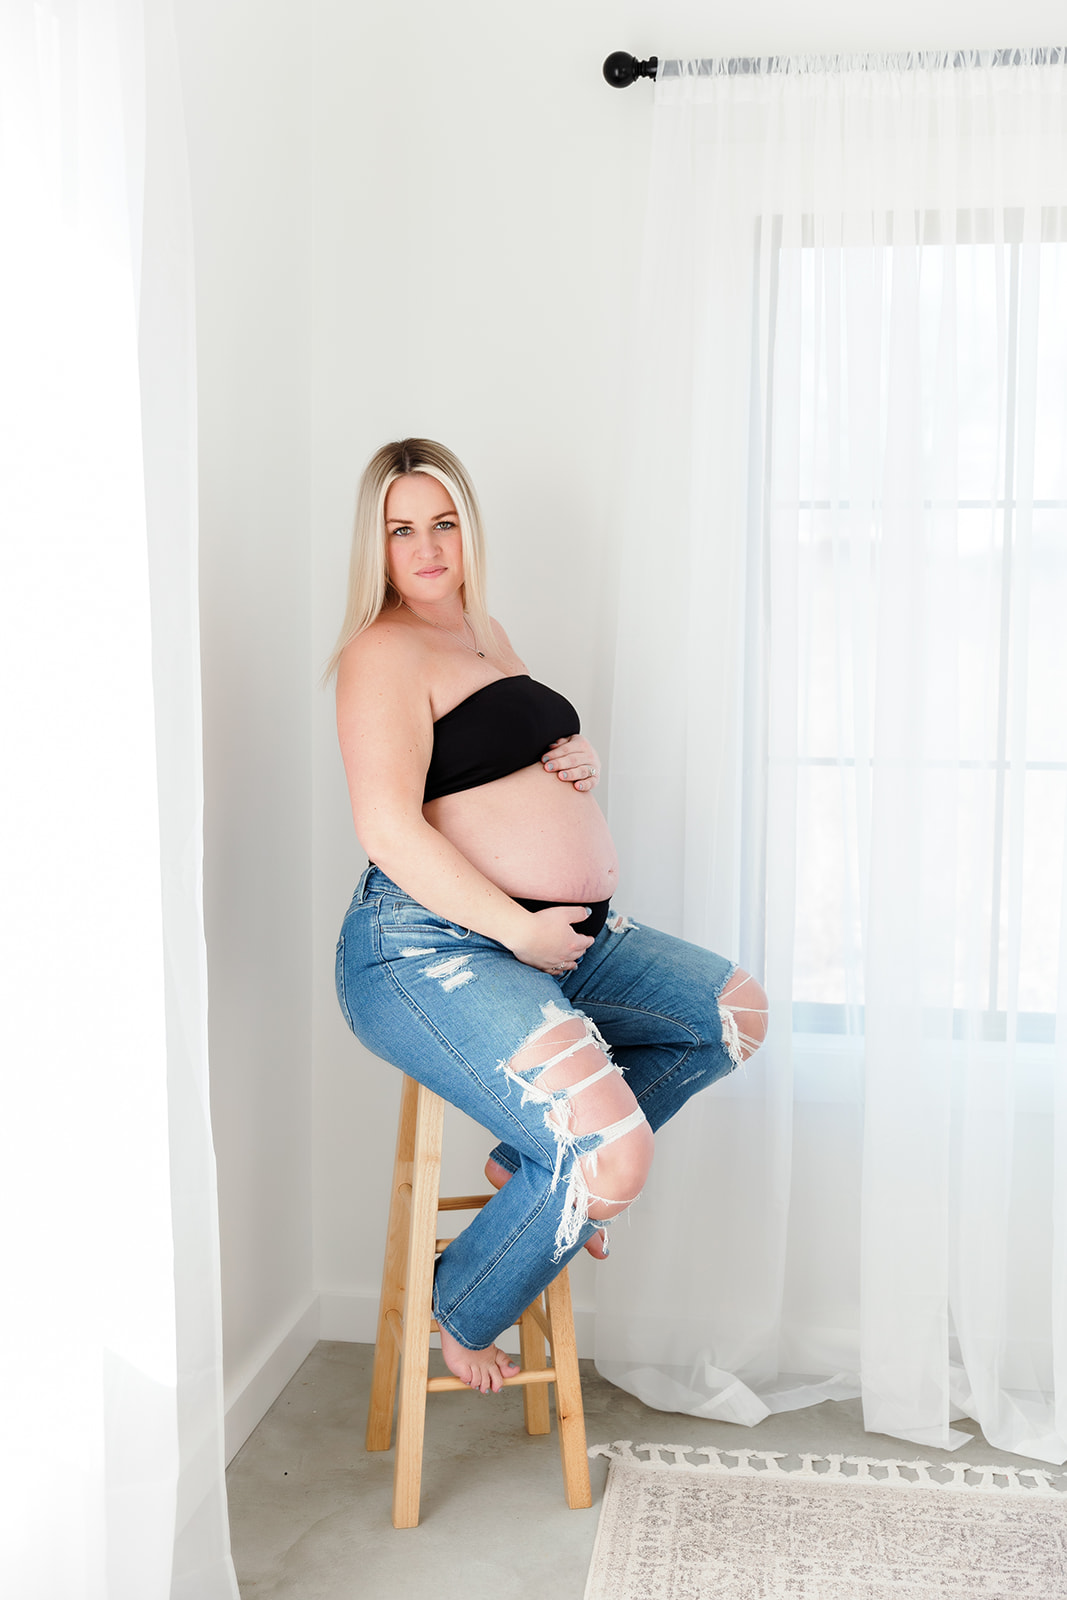 northwest ohio maternity photographer